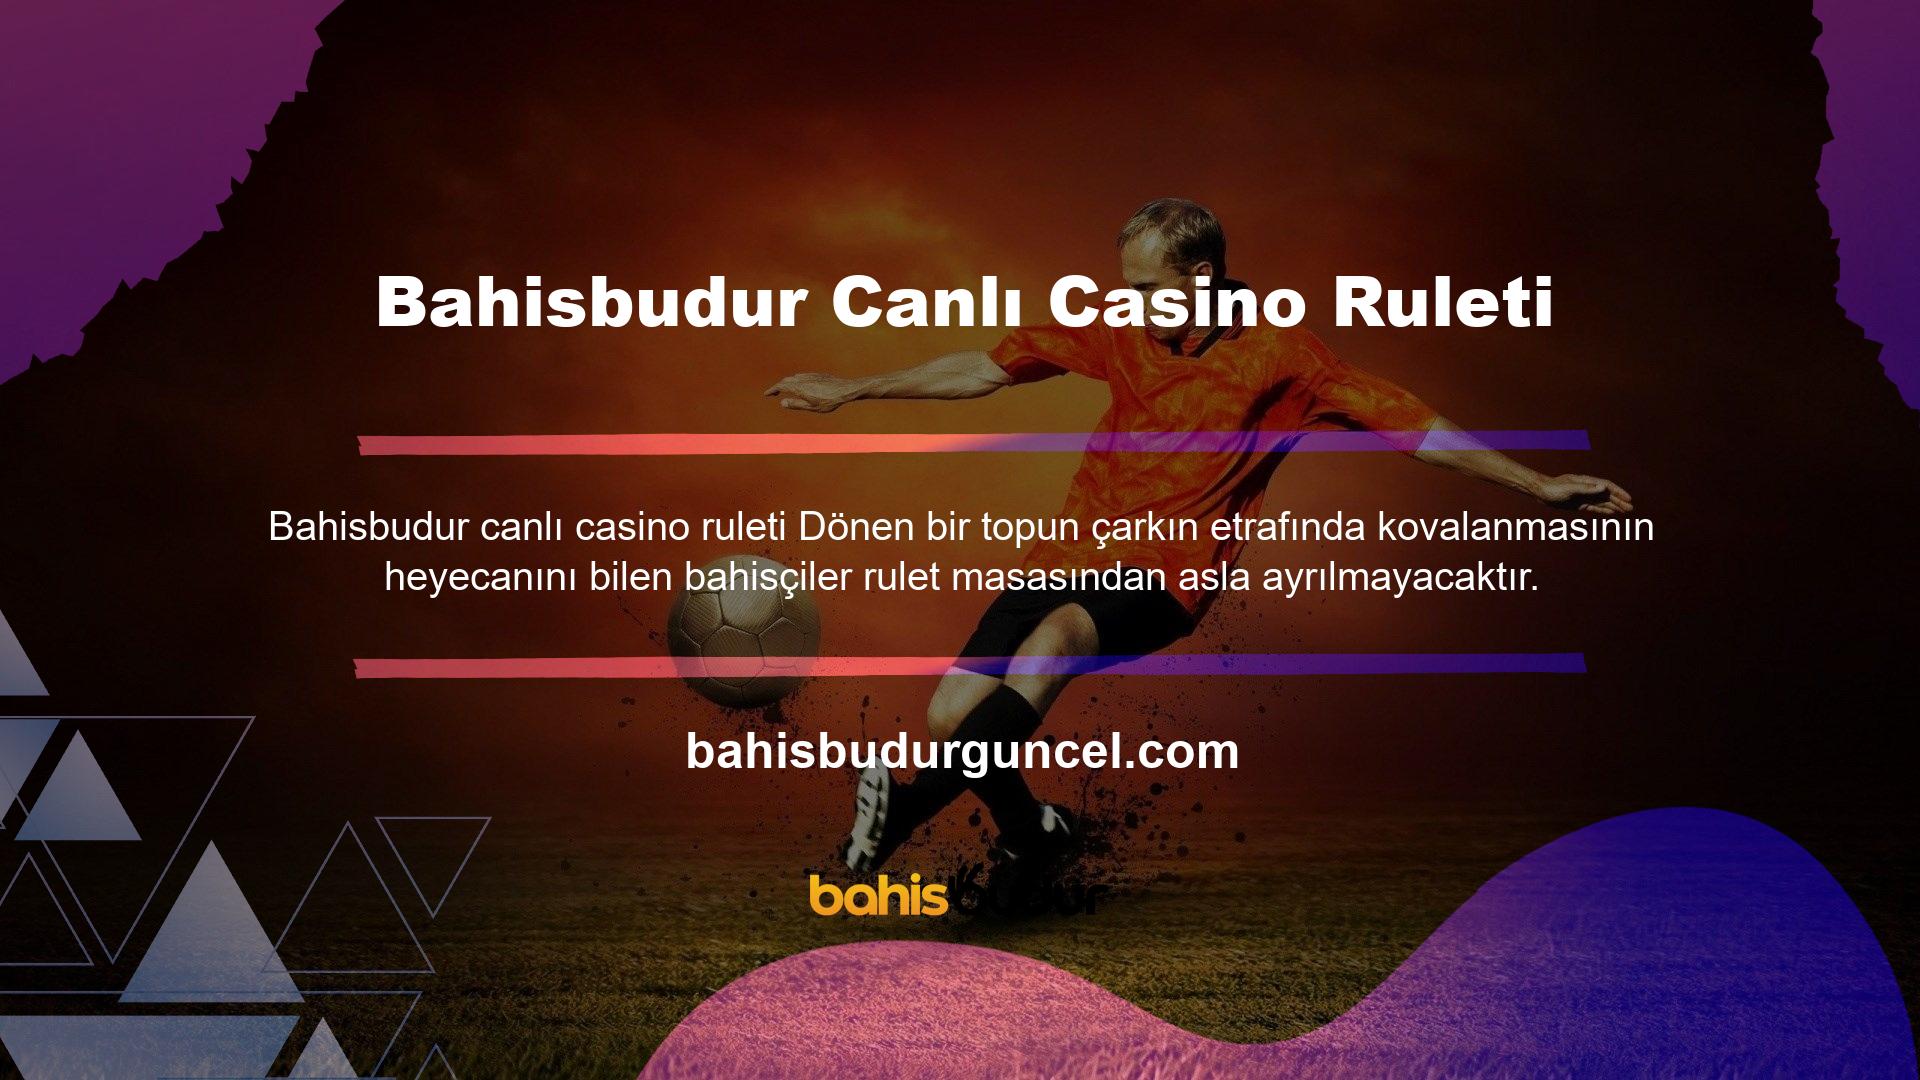 Bahisbudur Casino, her gün güncellenen yeni oyunların yer aldığı farklı rulet masasına sahiptir